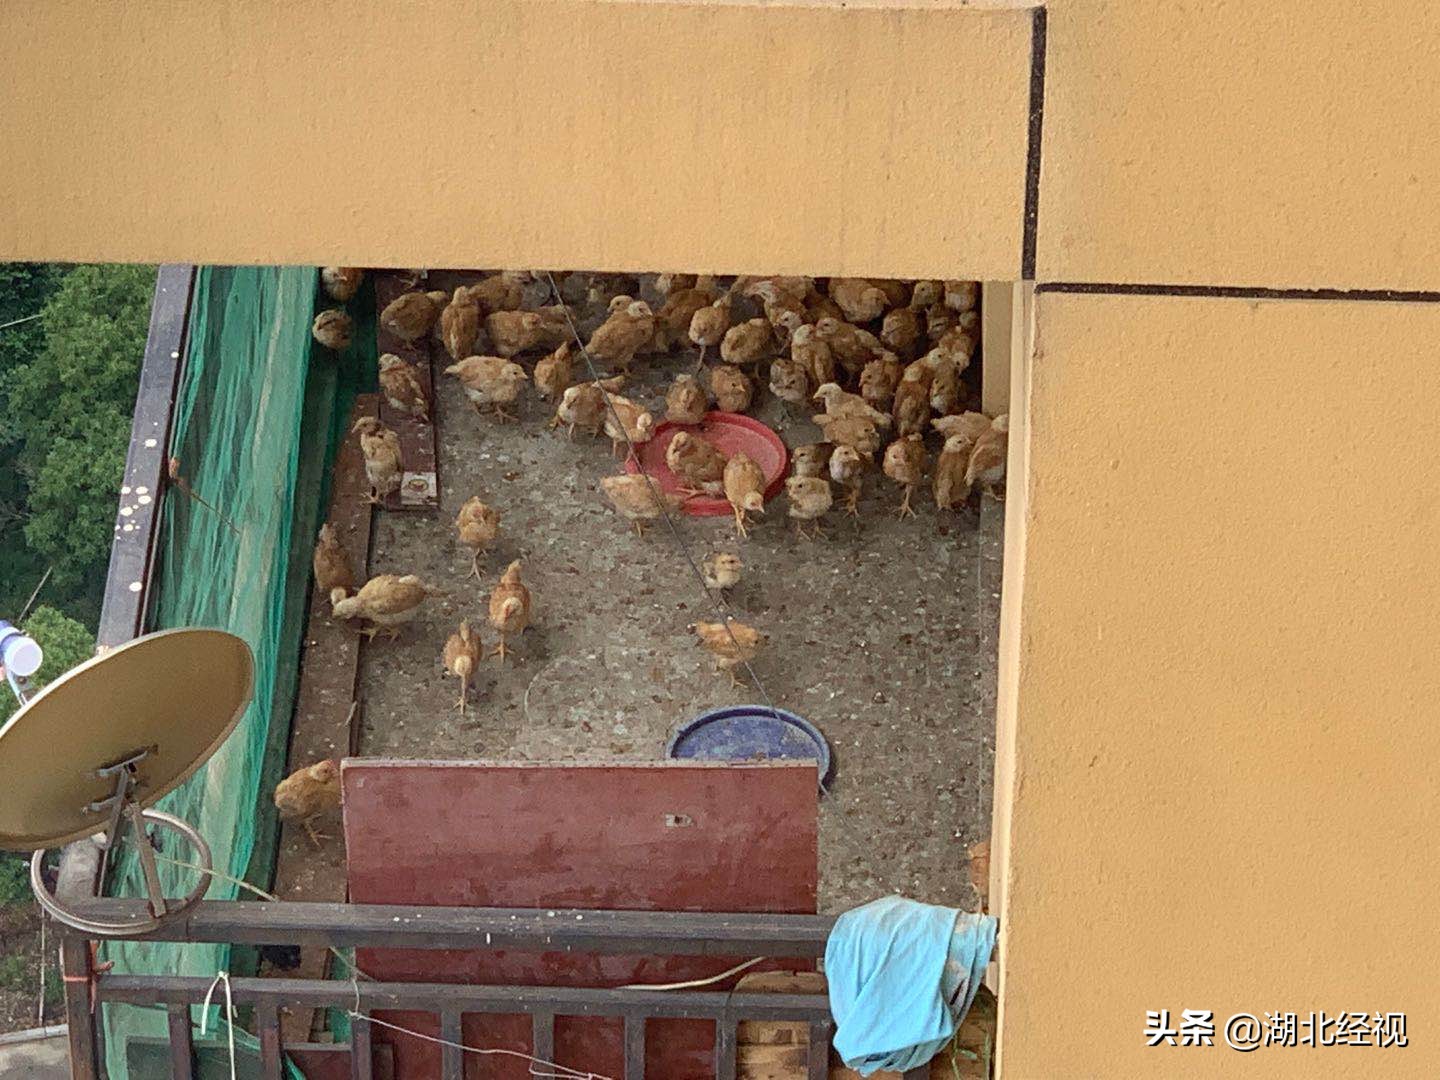 居民19楼高层家中养上百只鸡，邻居熏得受不了